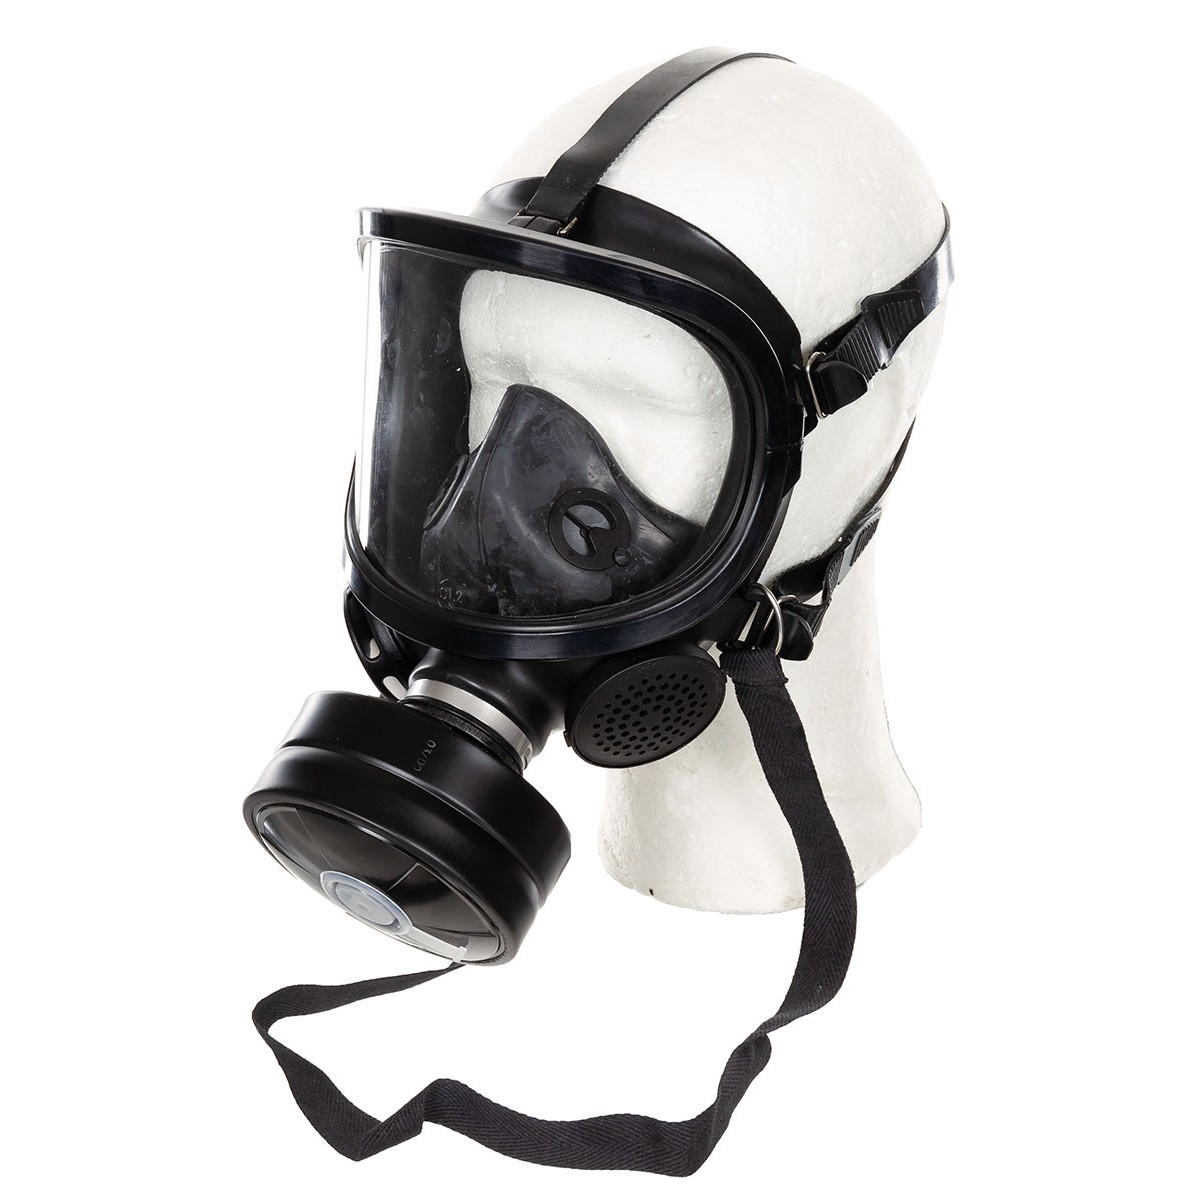 ABC Schutzmaske "FERNEZ" Panoramamaske Gasmaske neuwertig mit Filter